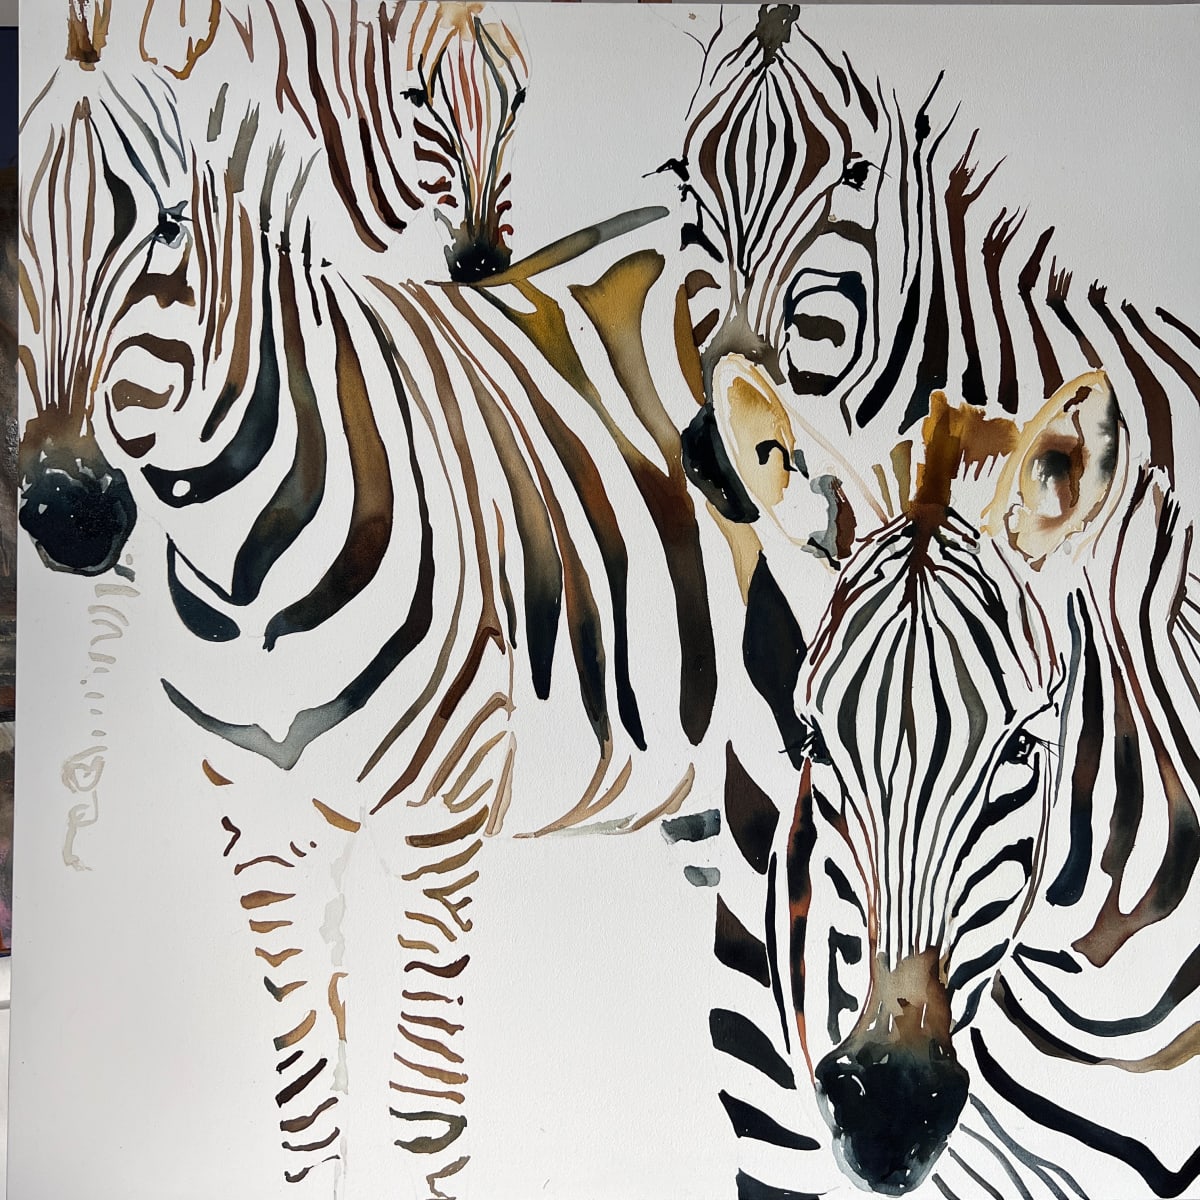 Zebra Crossing by Louise Luton 